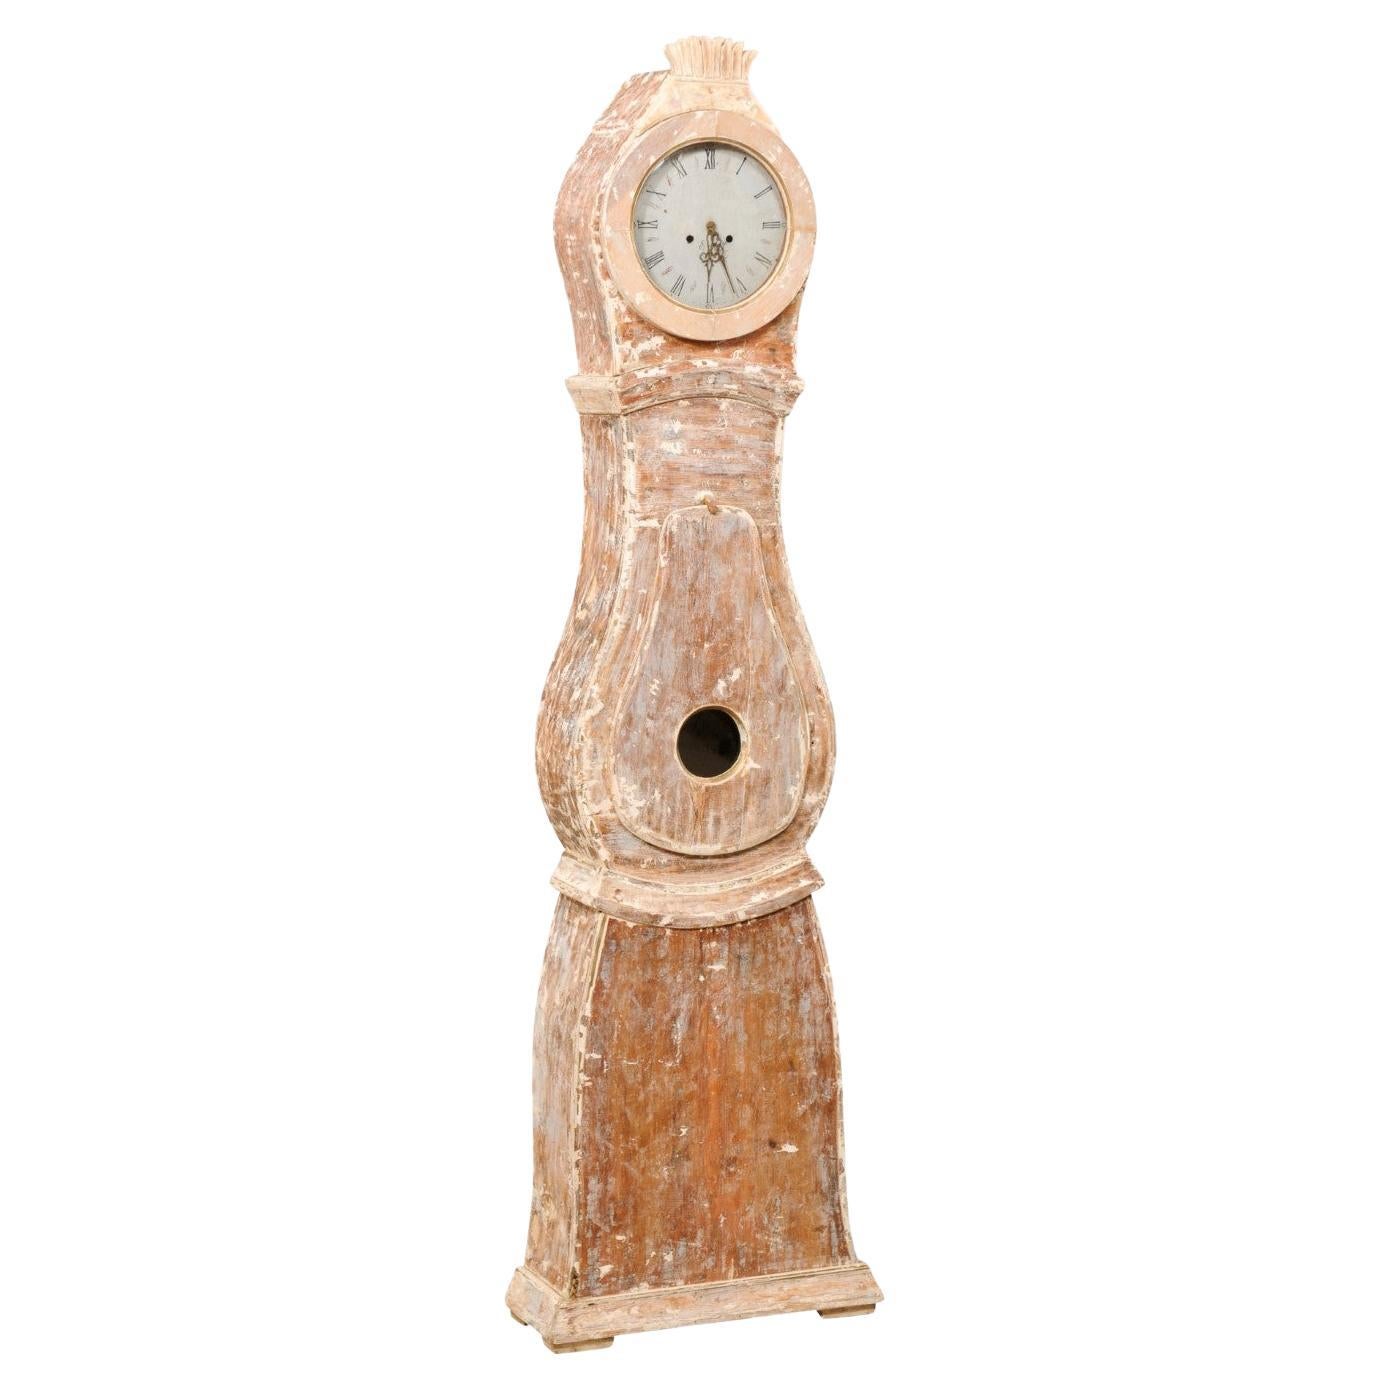 Horloge Mora de grand-père suédoise avec cadran et mouvement en métal d'origine, vers 1830